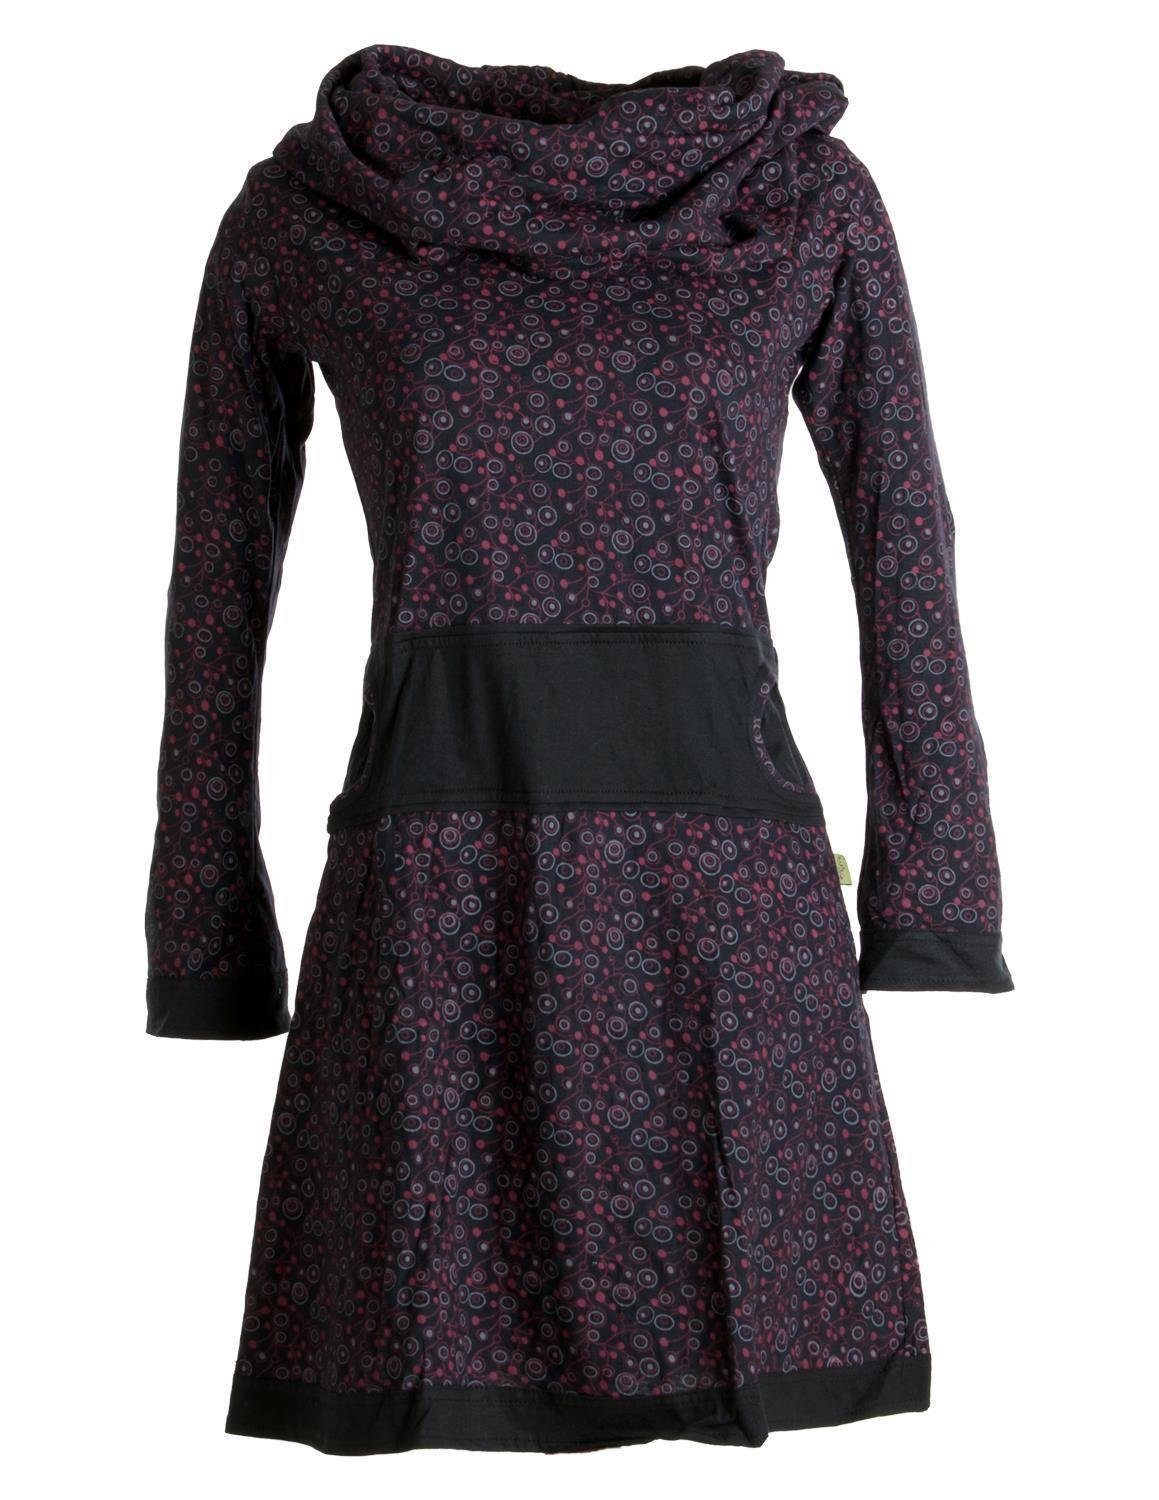 Vishes Jerseykleid Bedrucktes Kleid aus Baumwolle mit Schalkragen Ethno, Goa, Boho, Hippie Style schwarz-rot